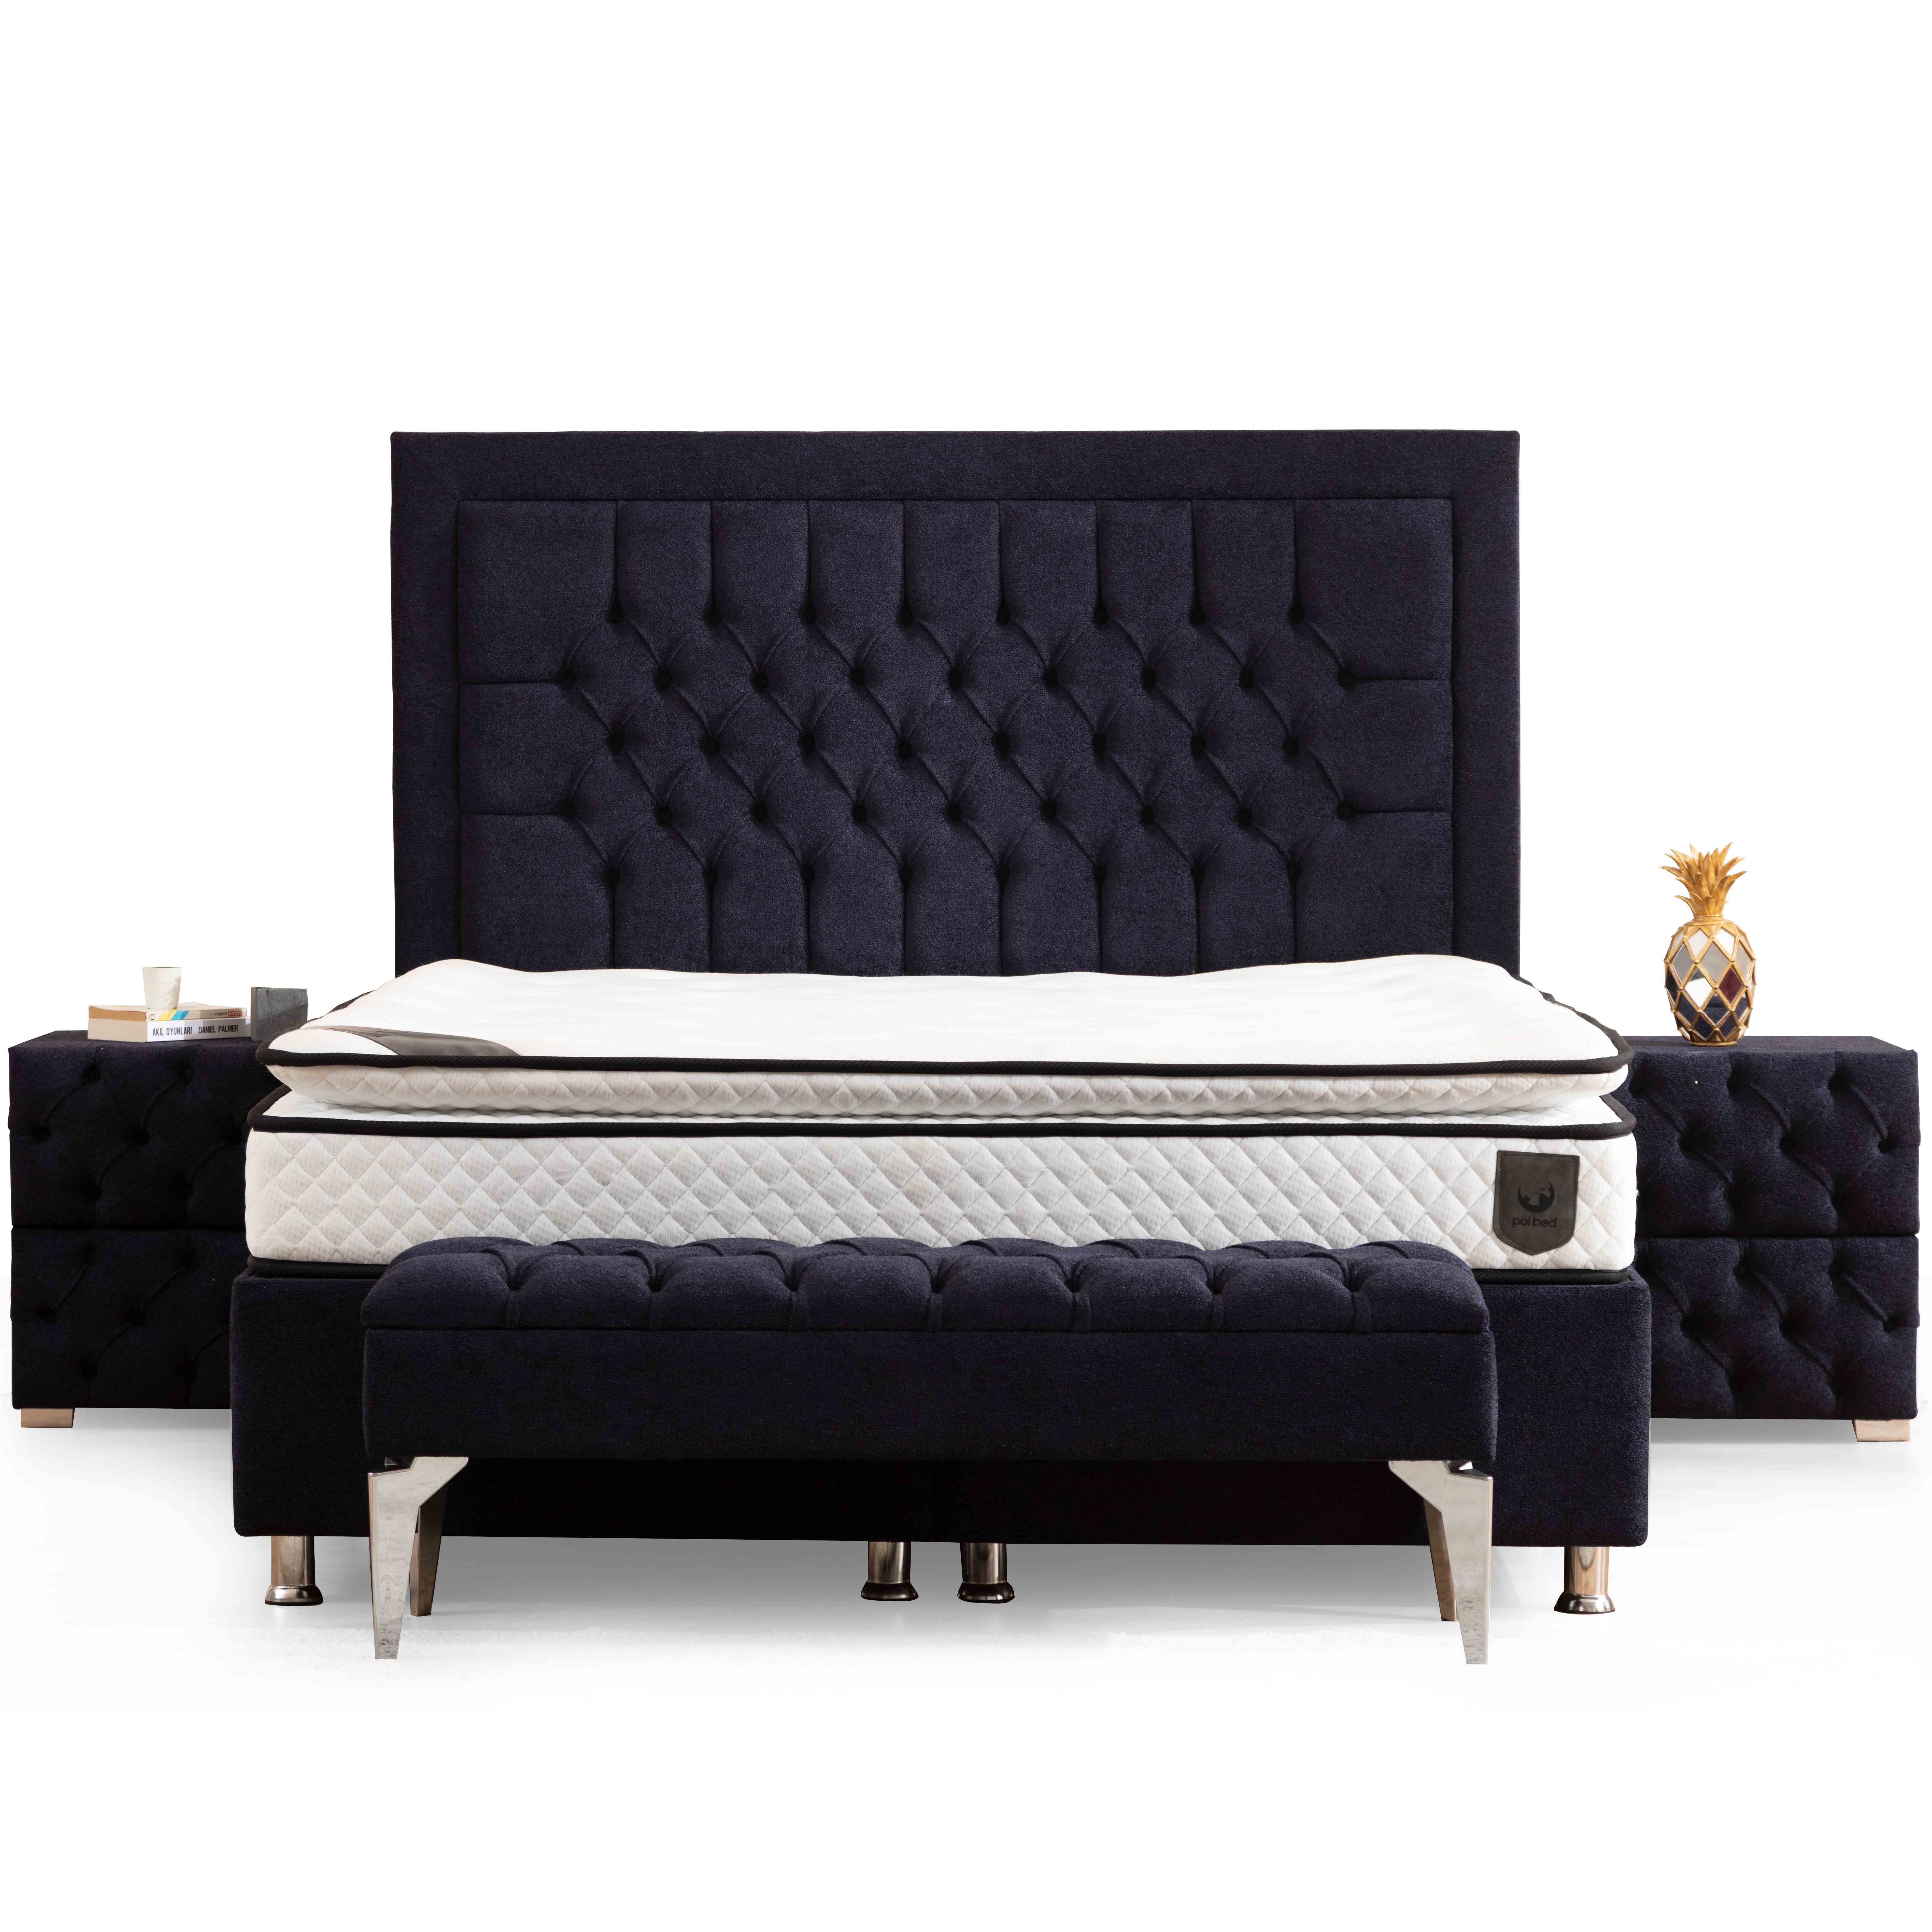 Astom Bed With Storage 160x200 cm